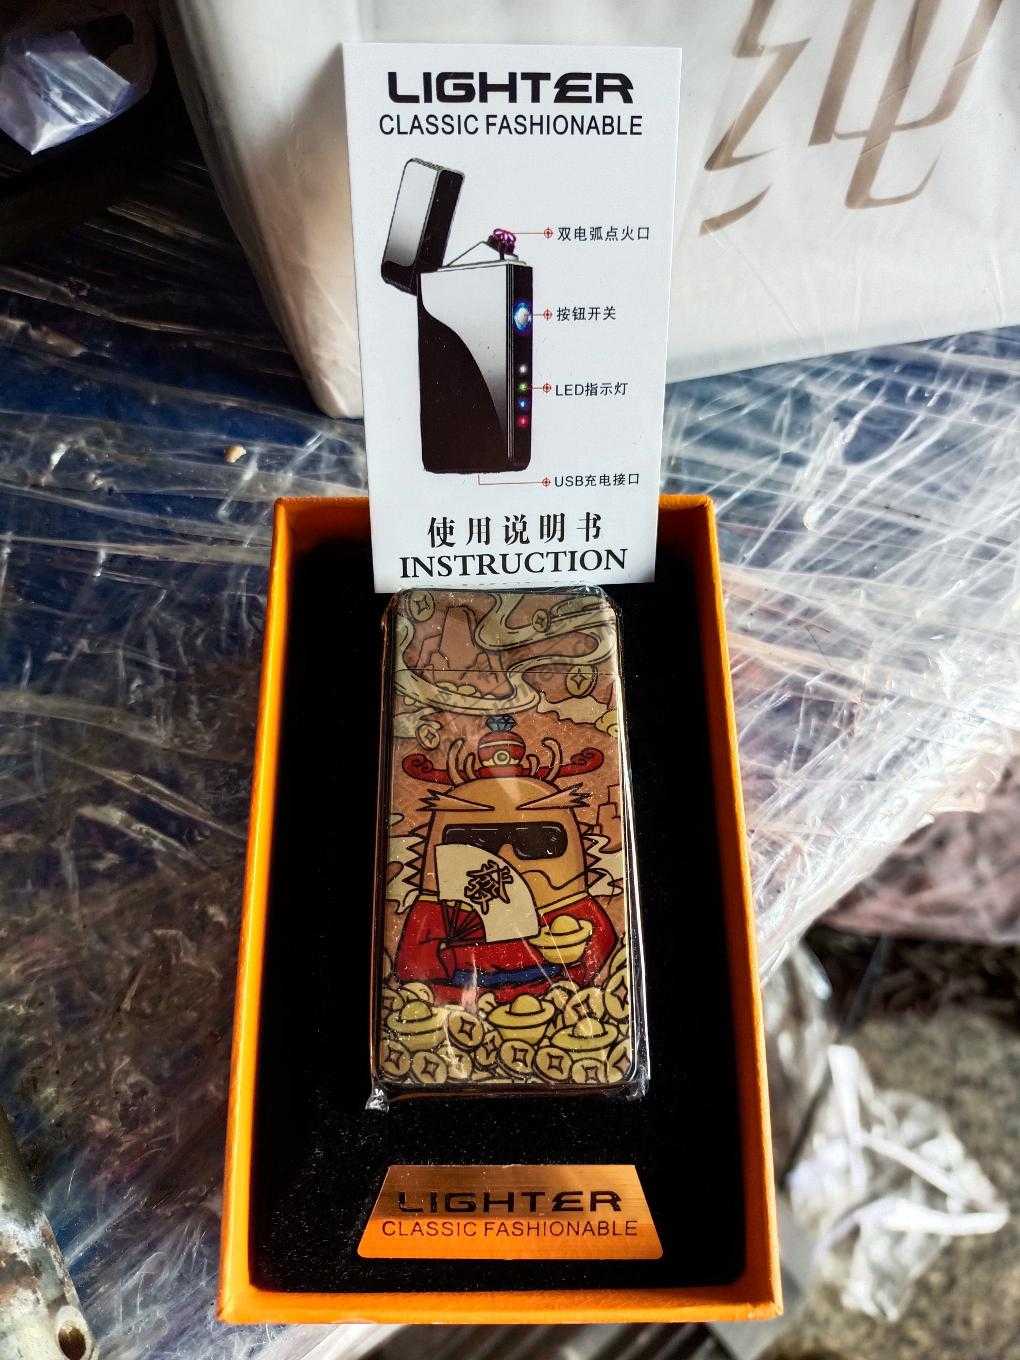 微信真龙中的新春礼物是一个电子点烟器-EMS广西发出-惠小助(52huixz.com)